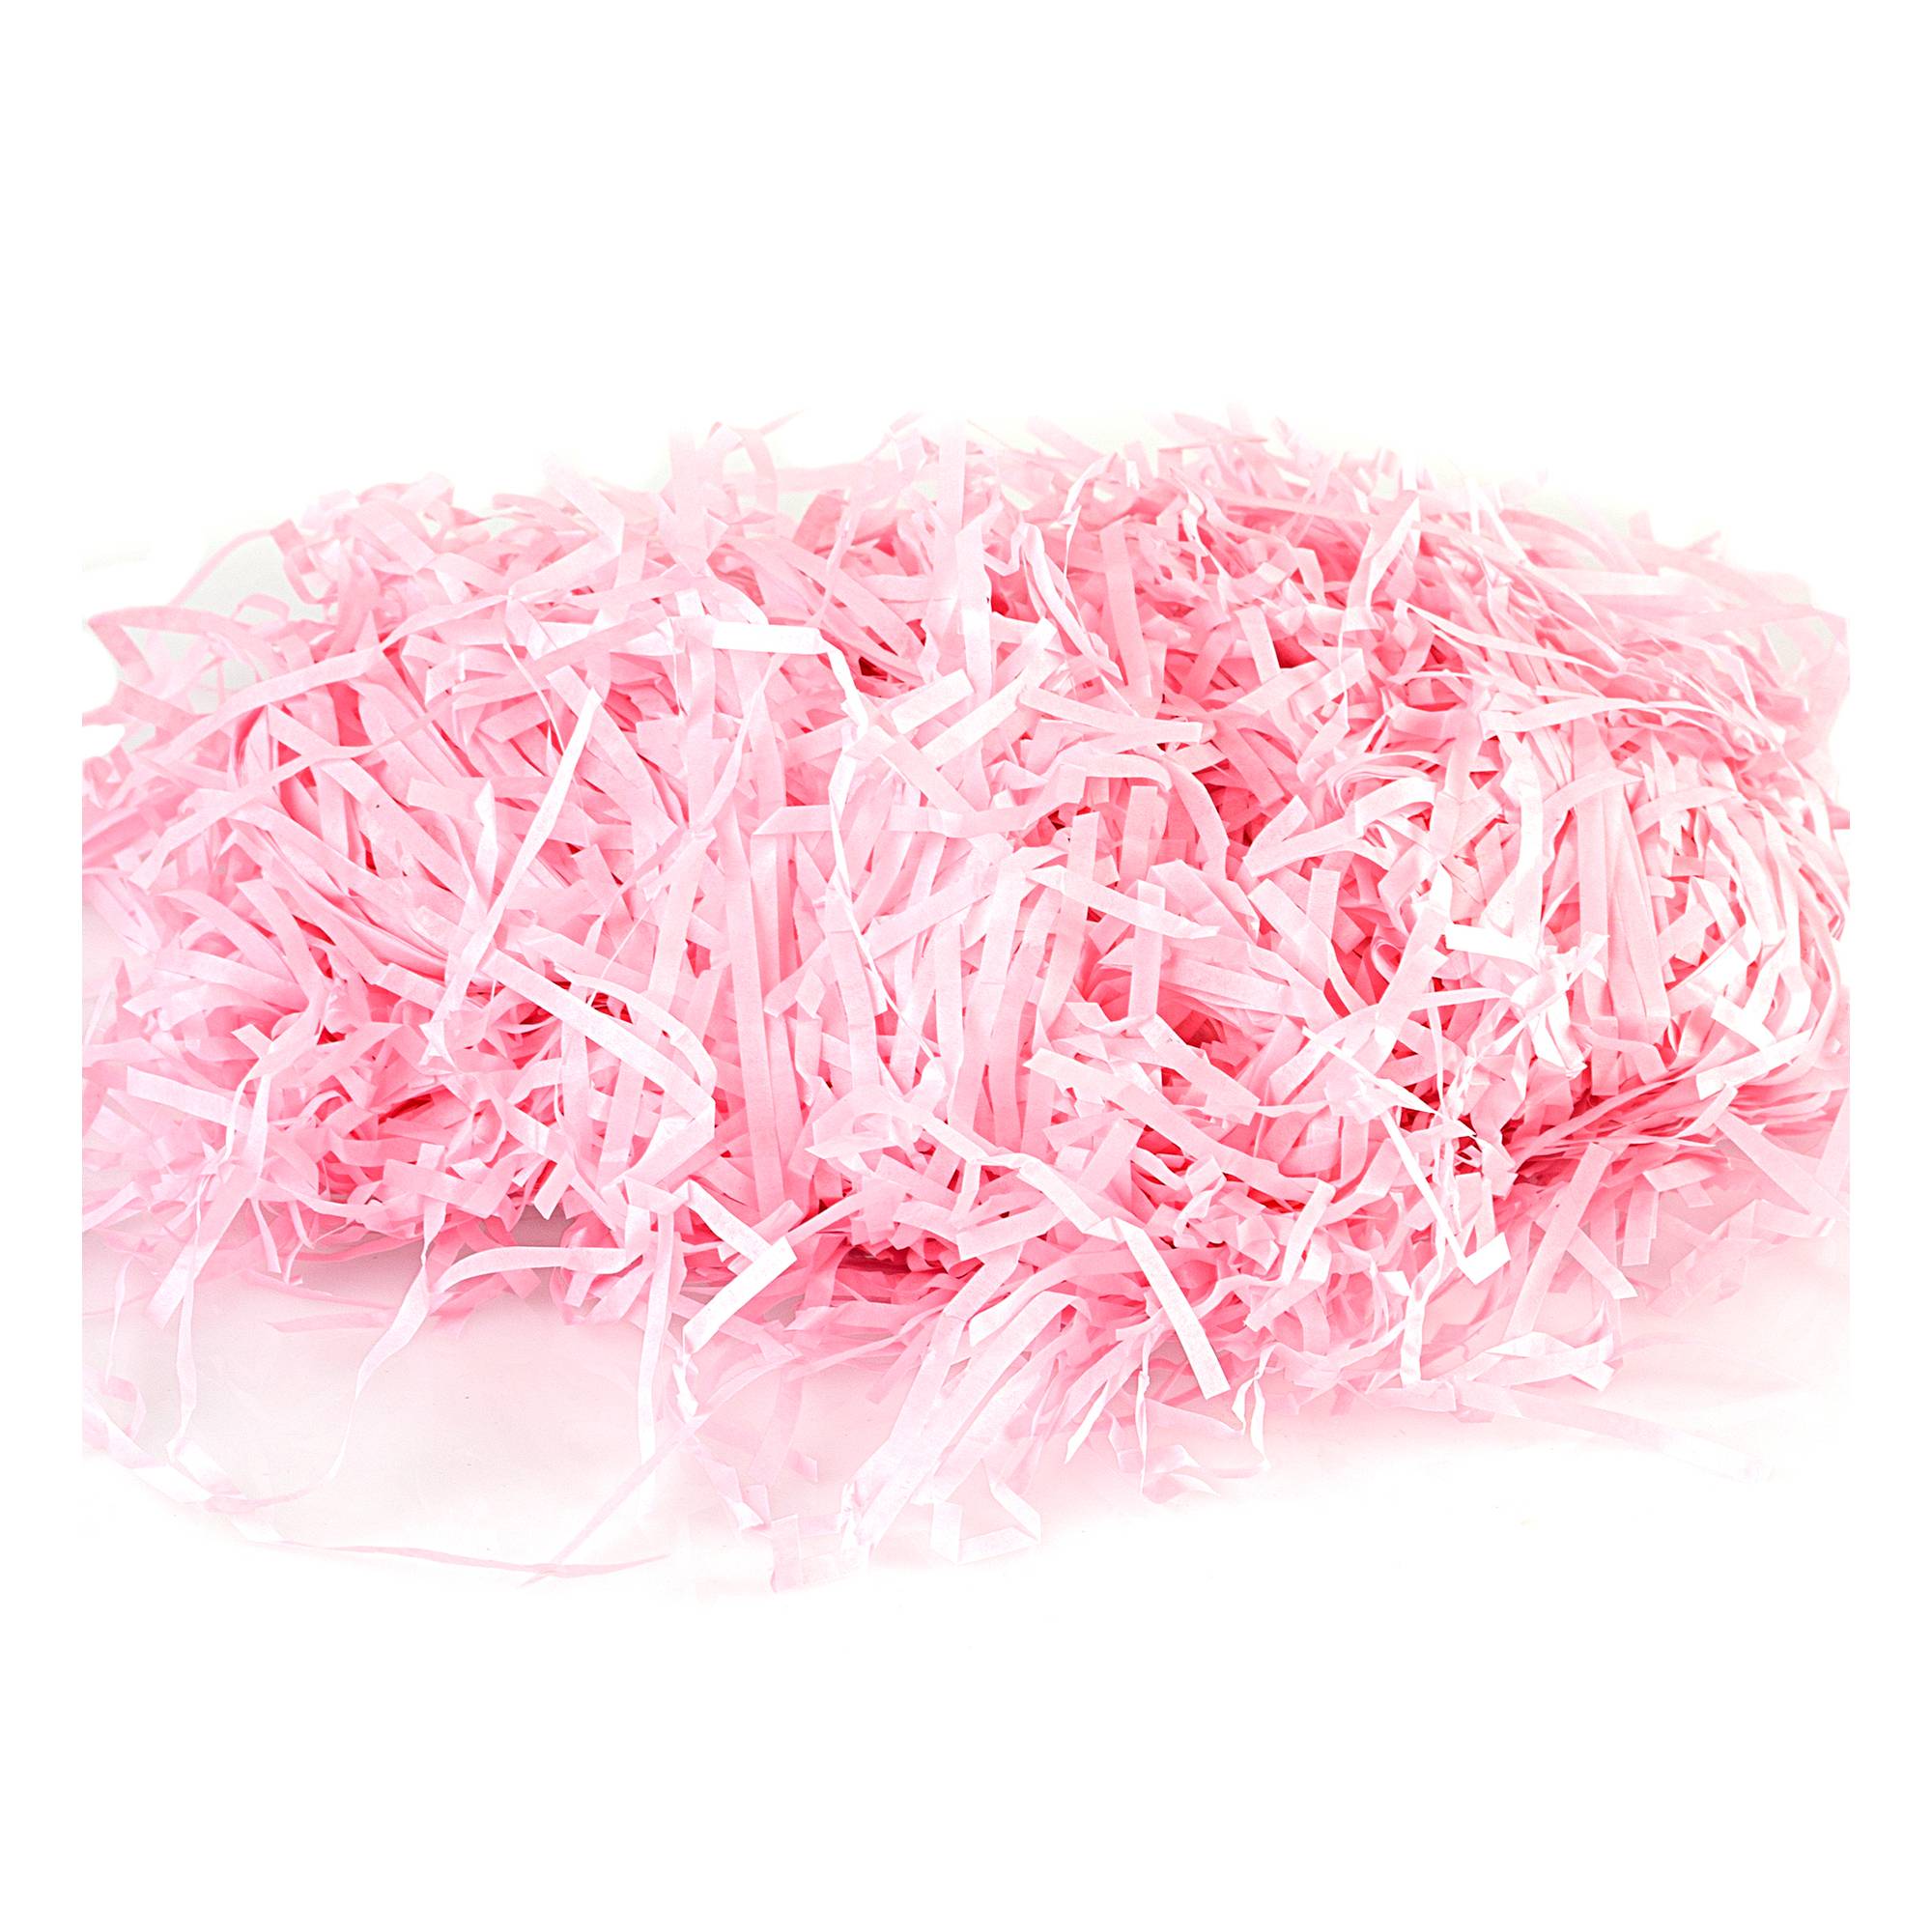 Pink Shredded Tissue Paper 25g 